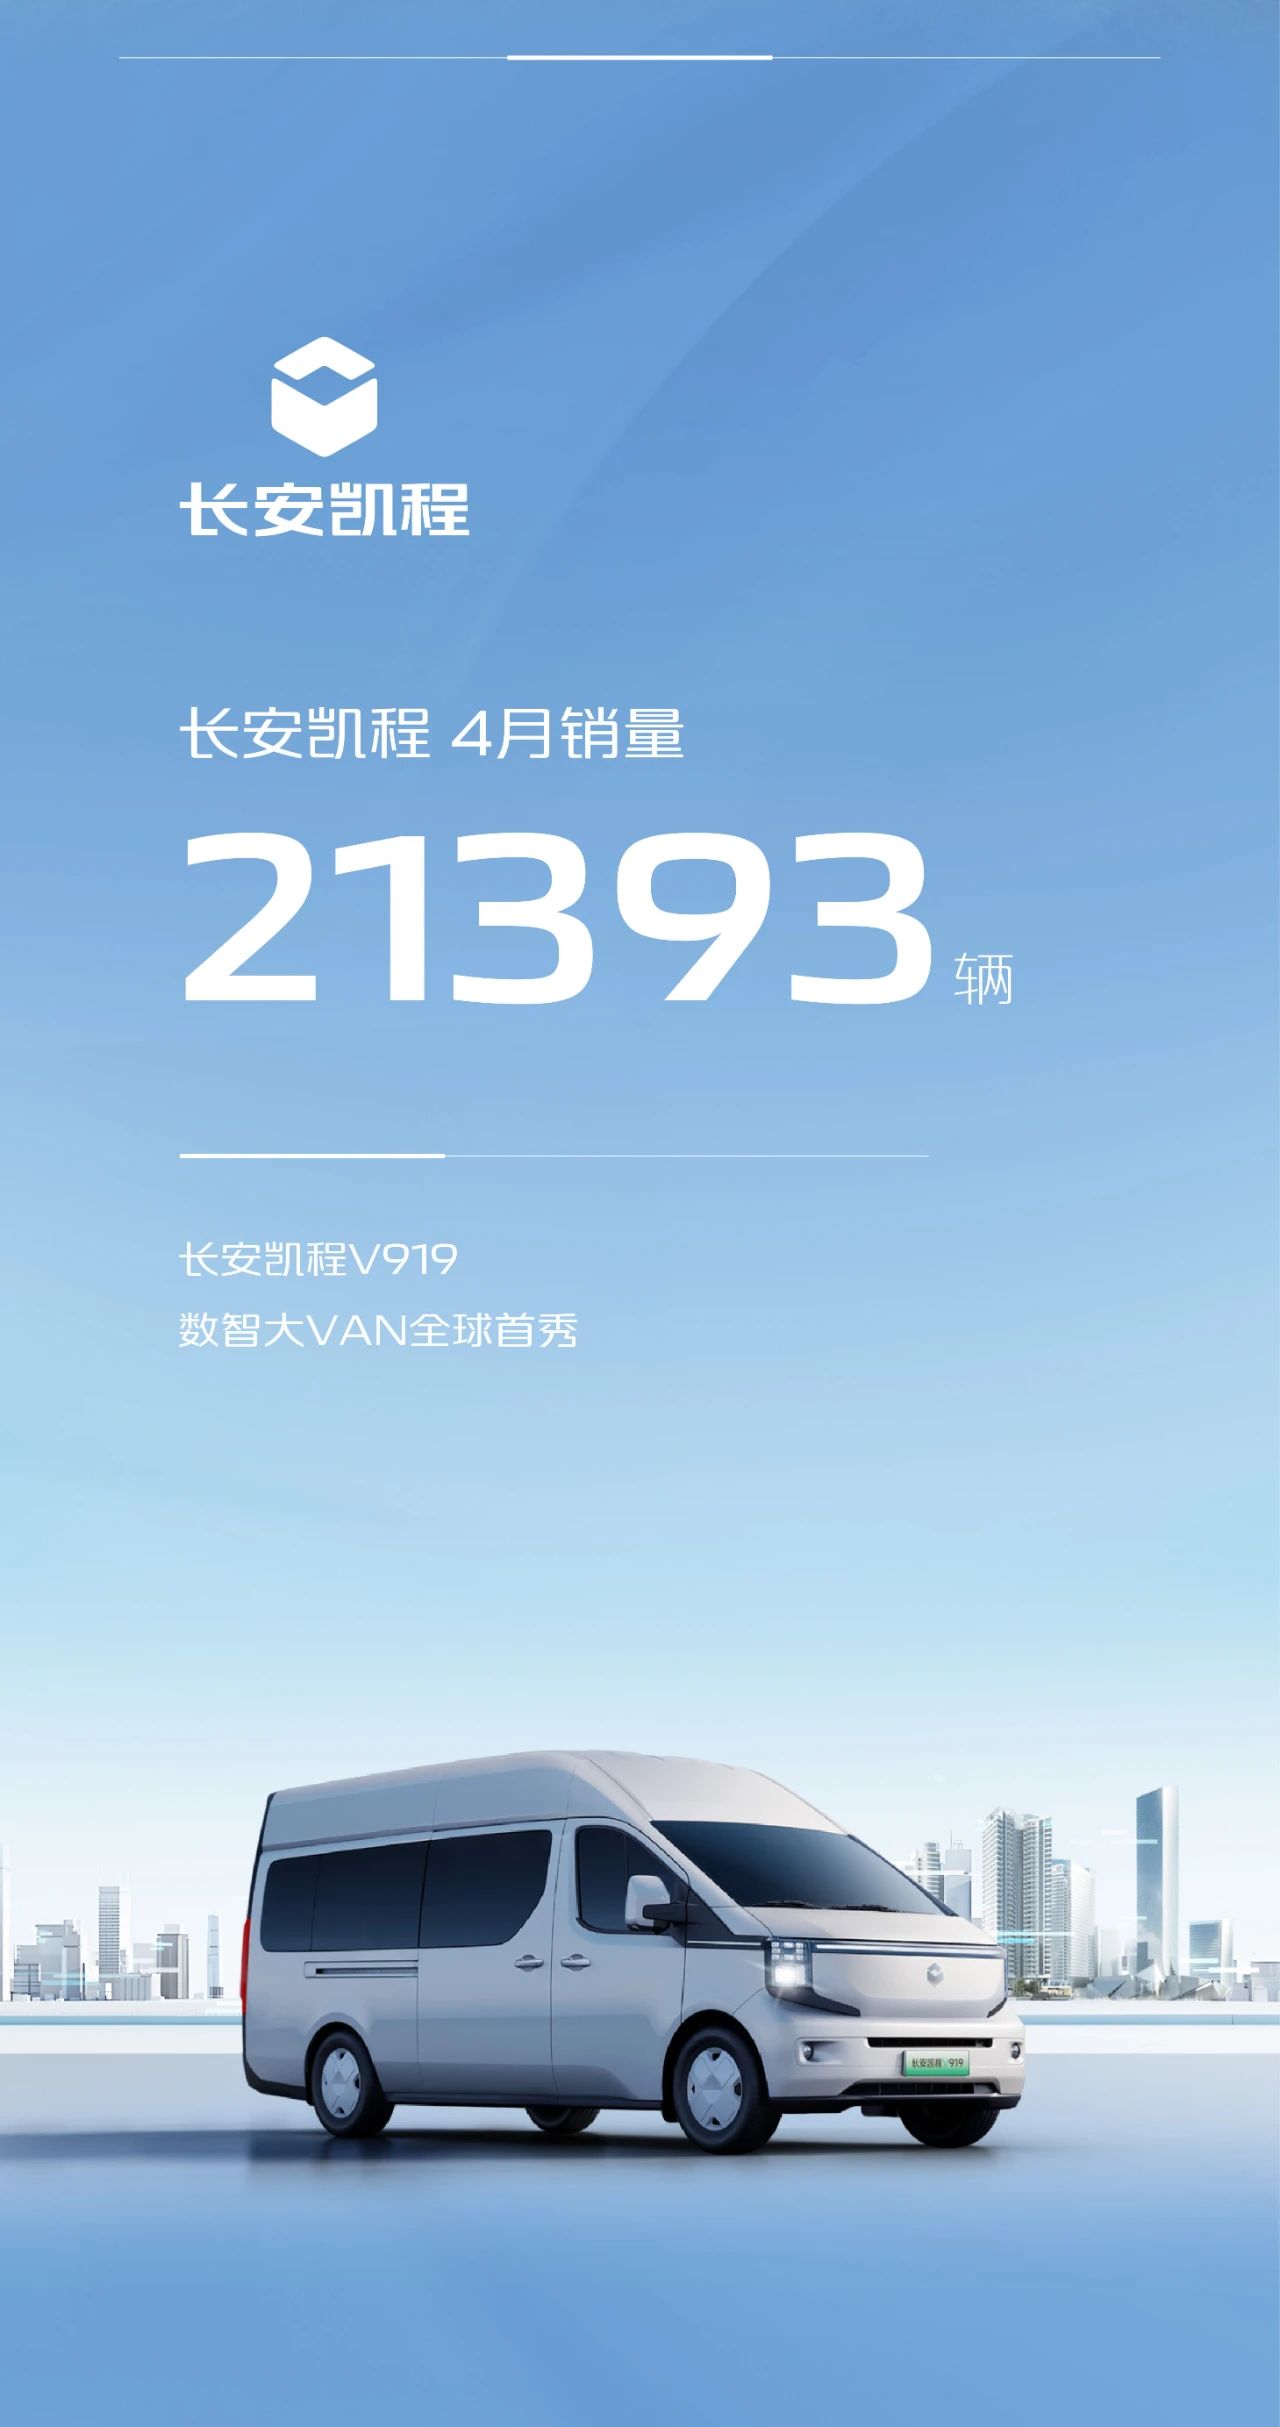 长安汽车品牌4月销量达91,332台;长安凯程4月销量为21,393台,定位数智